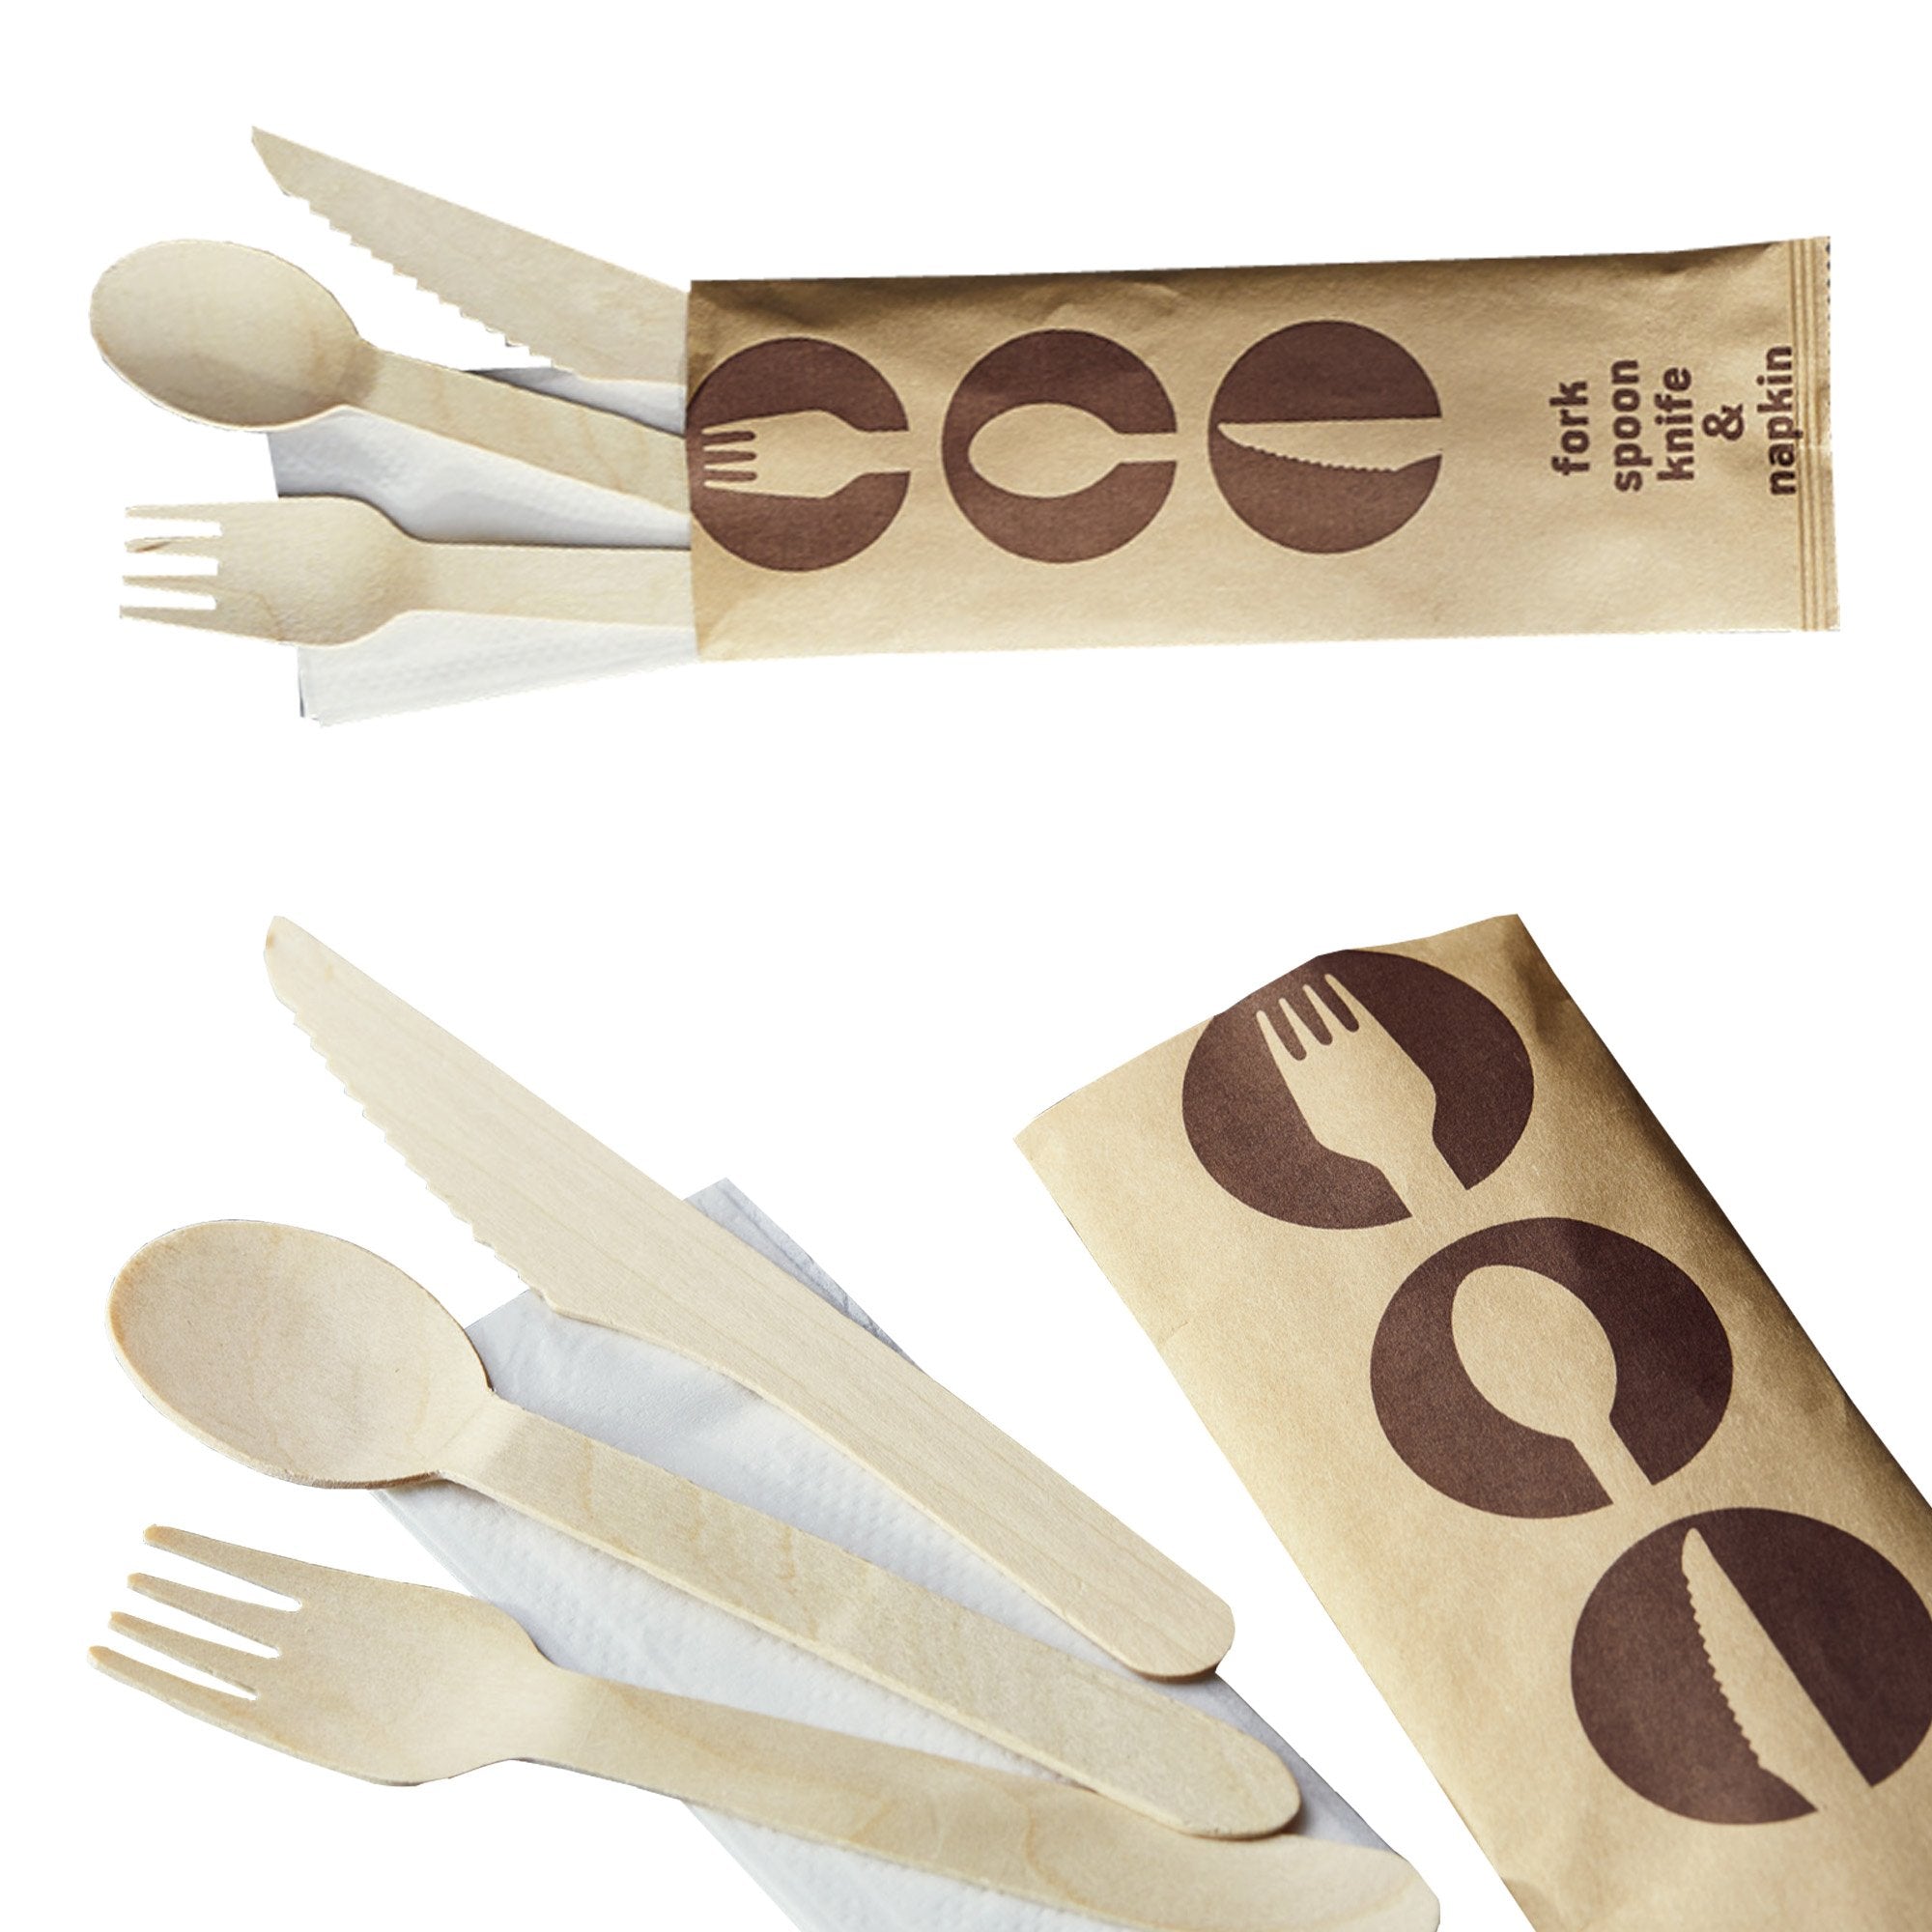 leone-48-tris-cucchiaio-coltello-forchetta-legno-16cm-tovagliolo